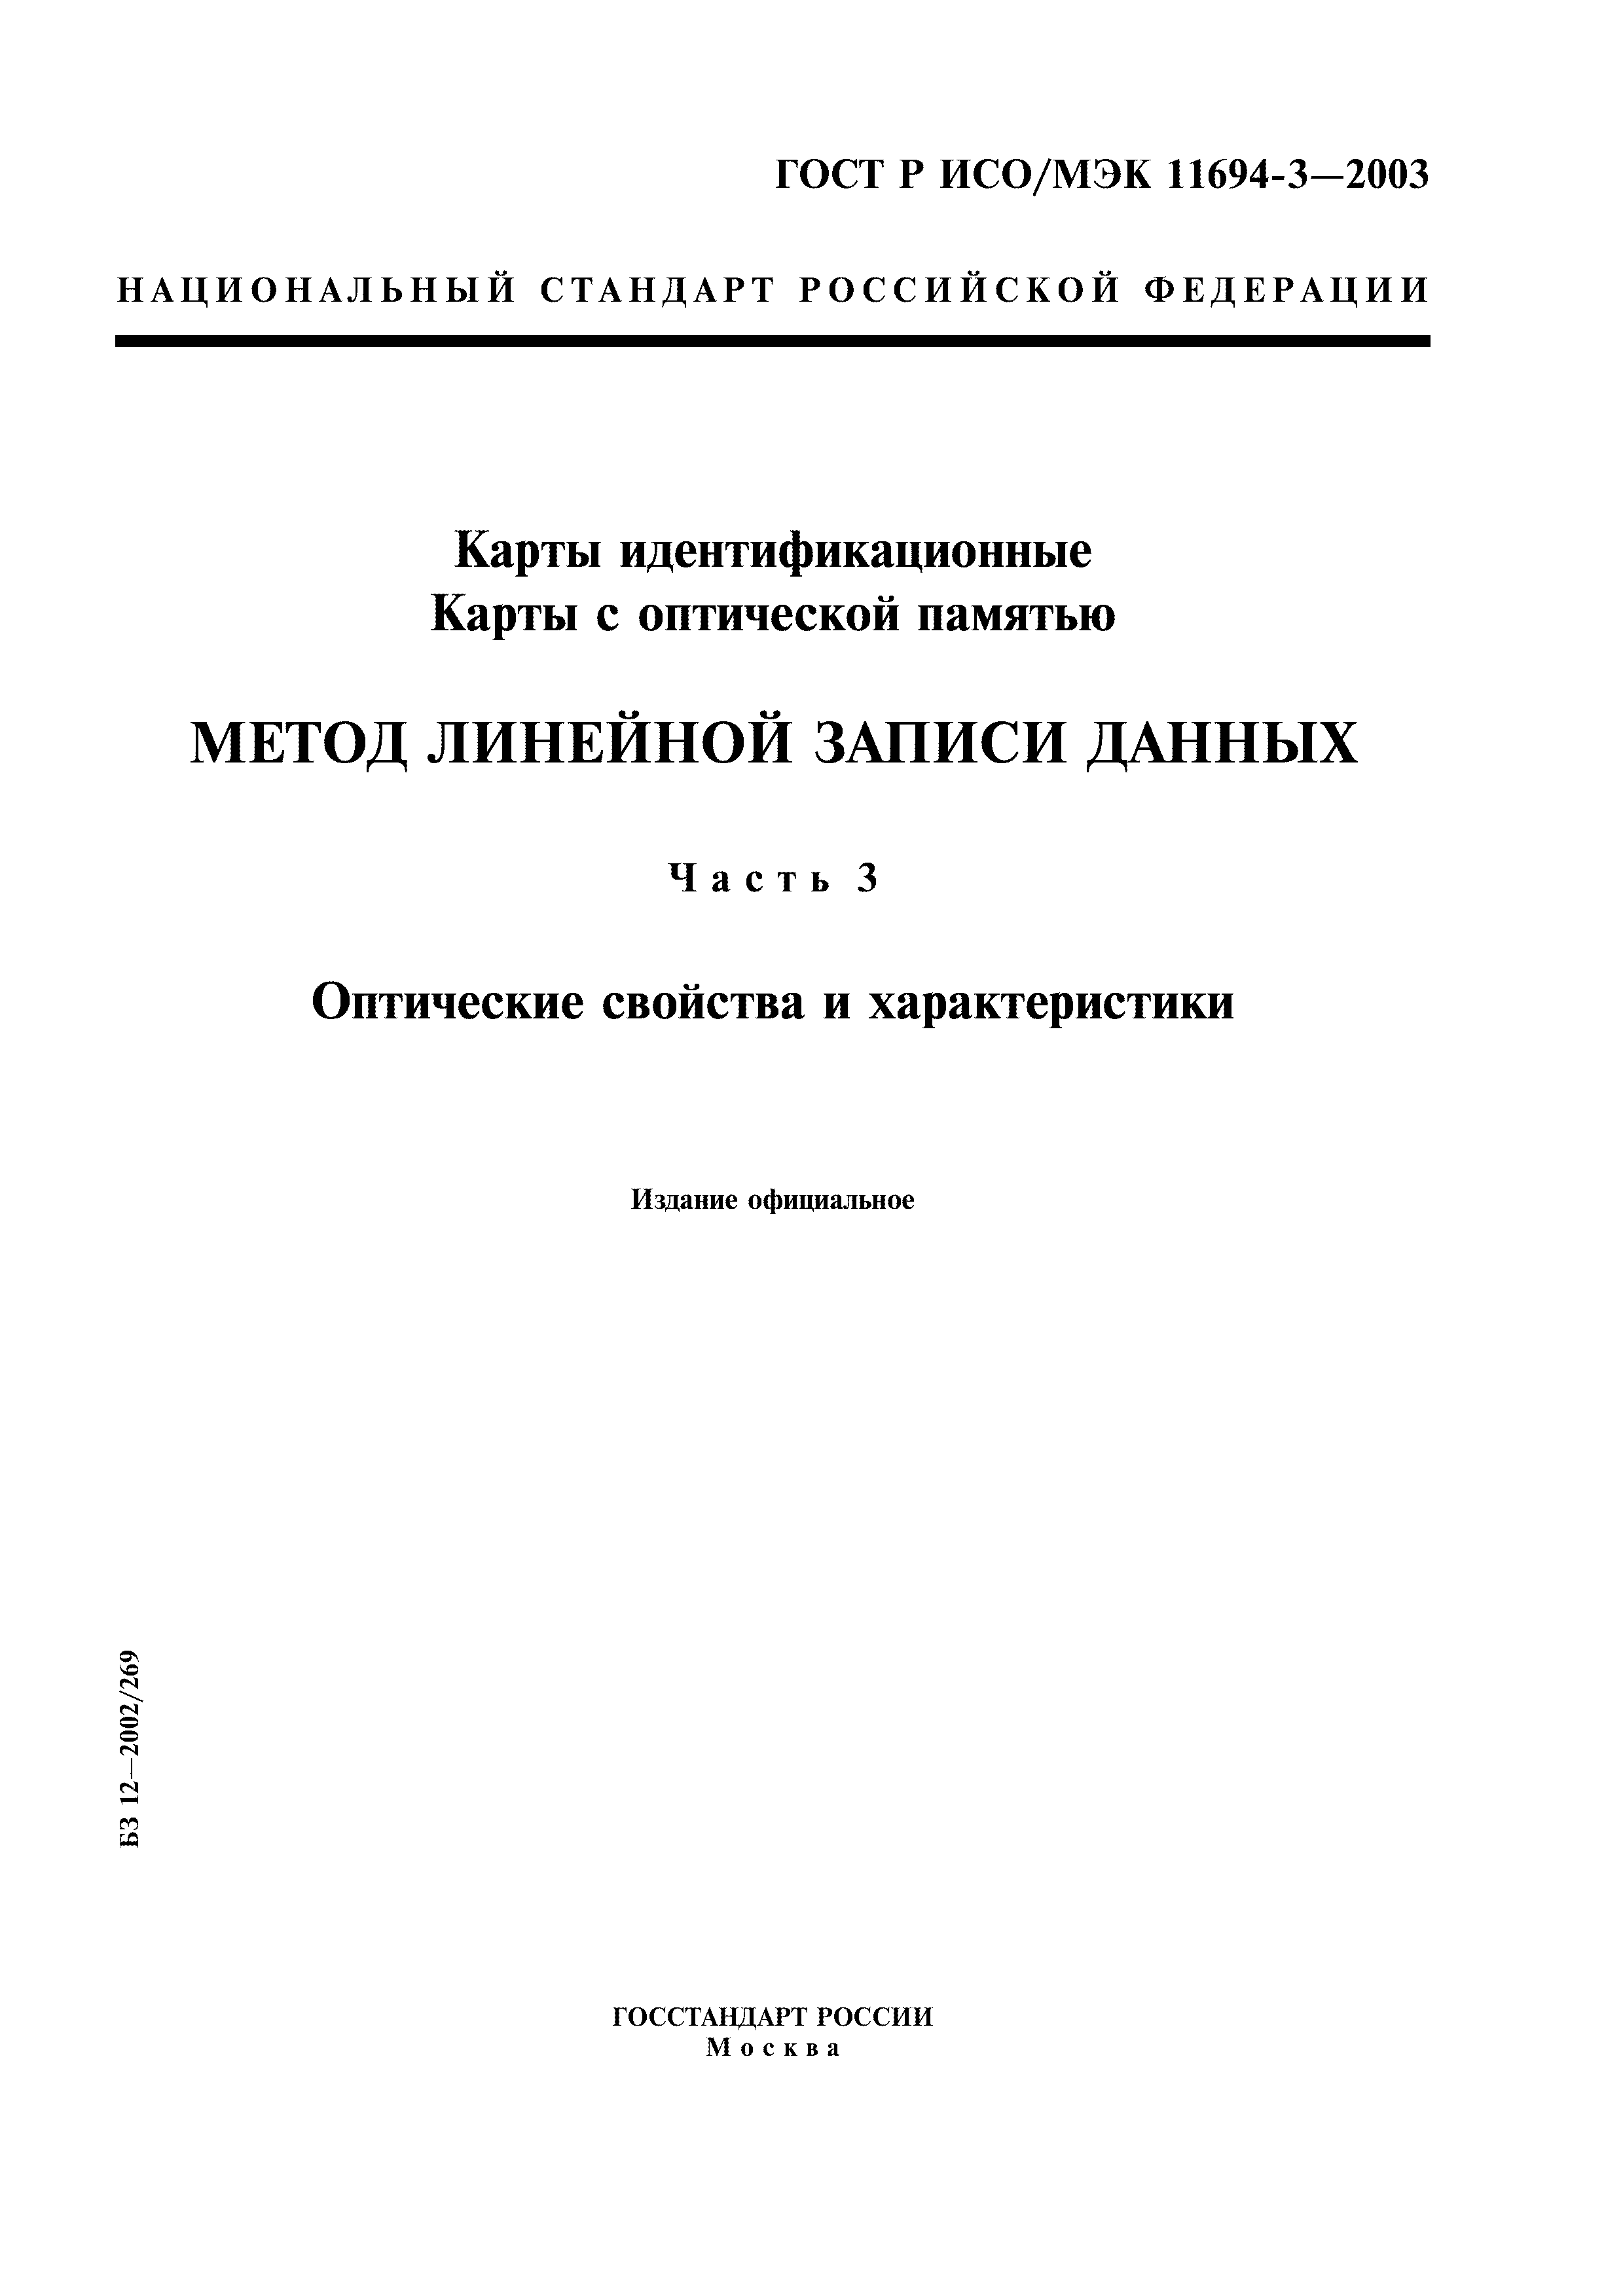 ГОСТ Р ИСО/МЭК 11694-3-2003